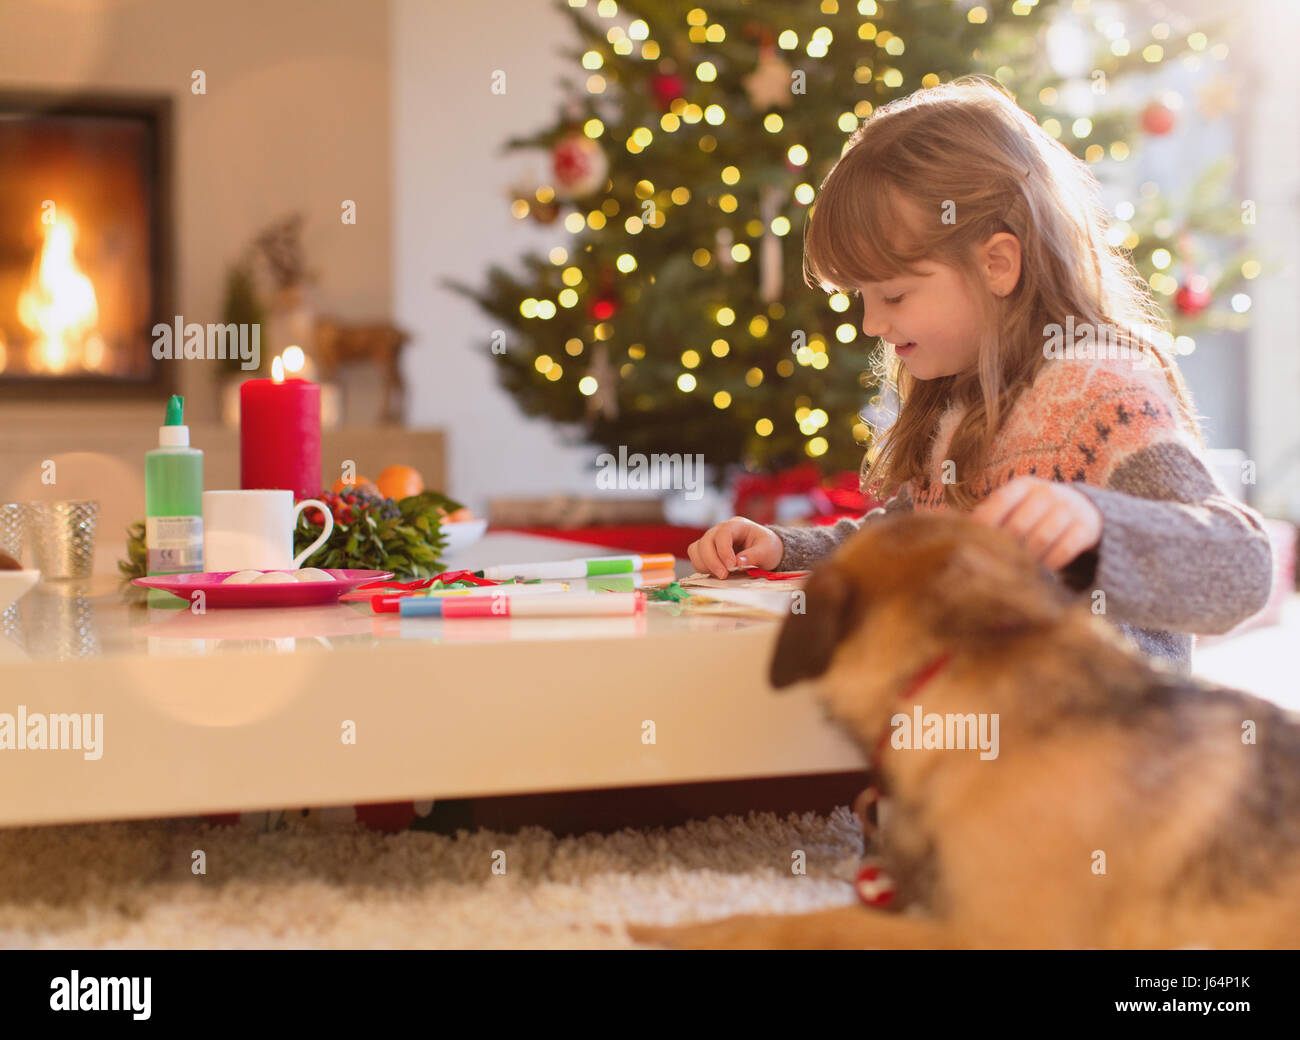 Hund beobachten Mädchen Färbung mit Markern in Weihnachten Wohnzimmer Stockfoto